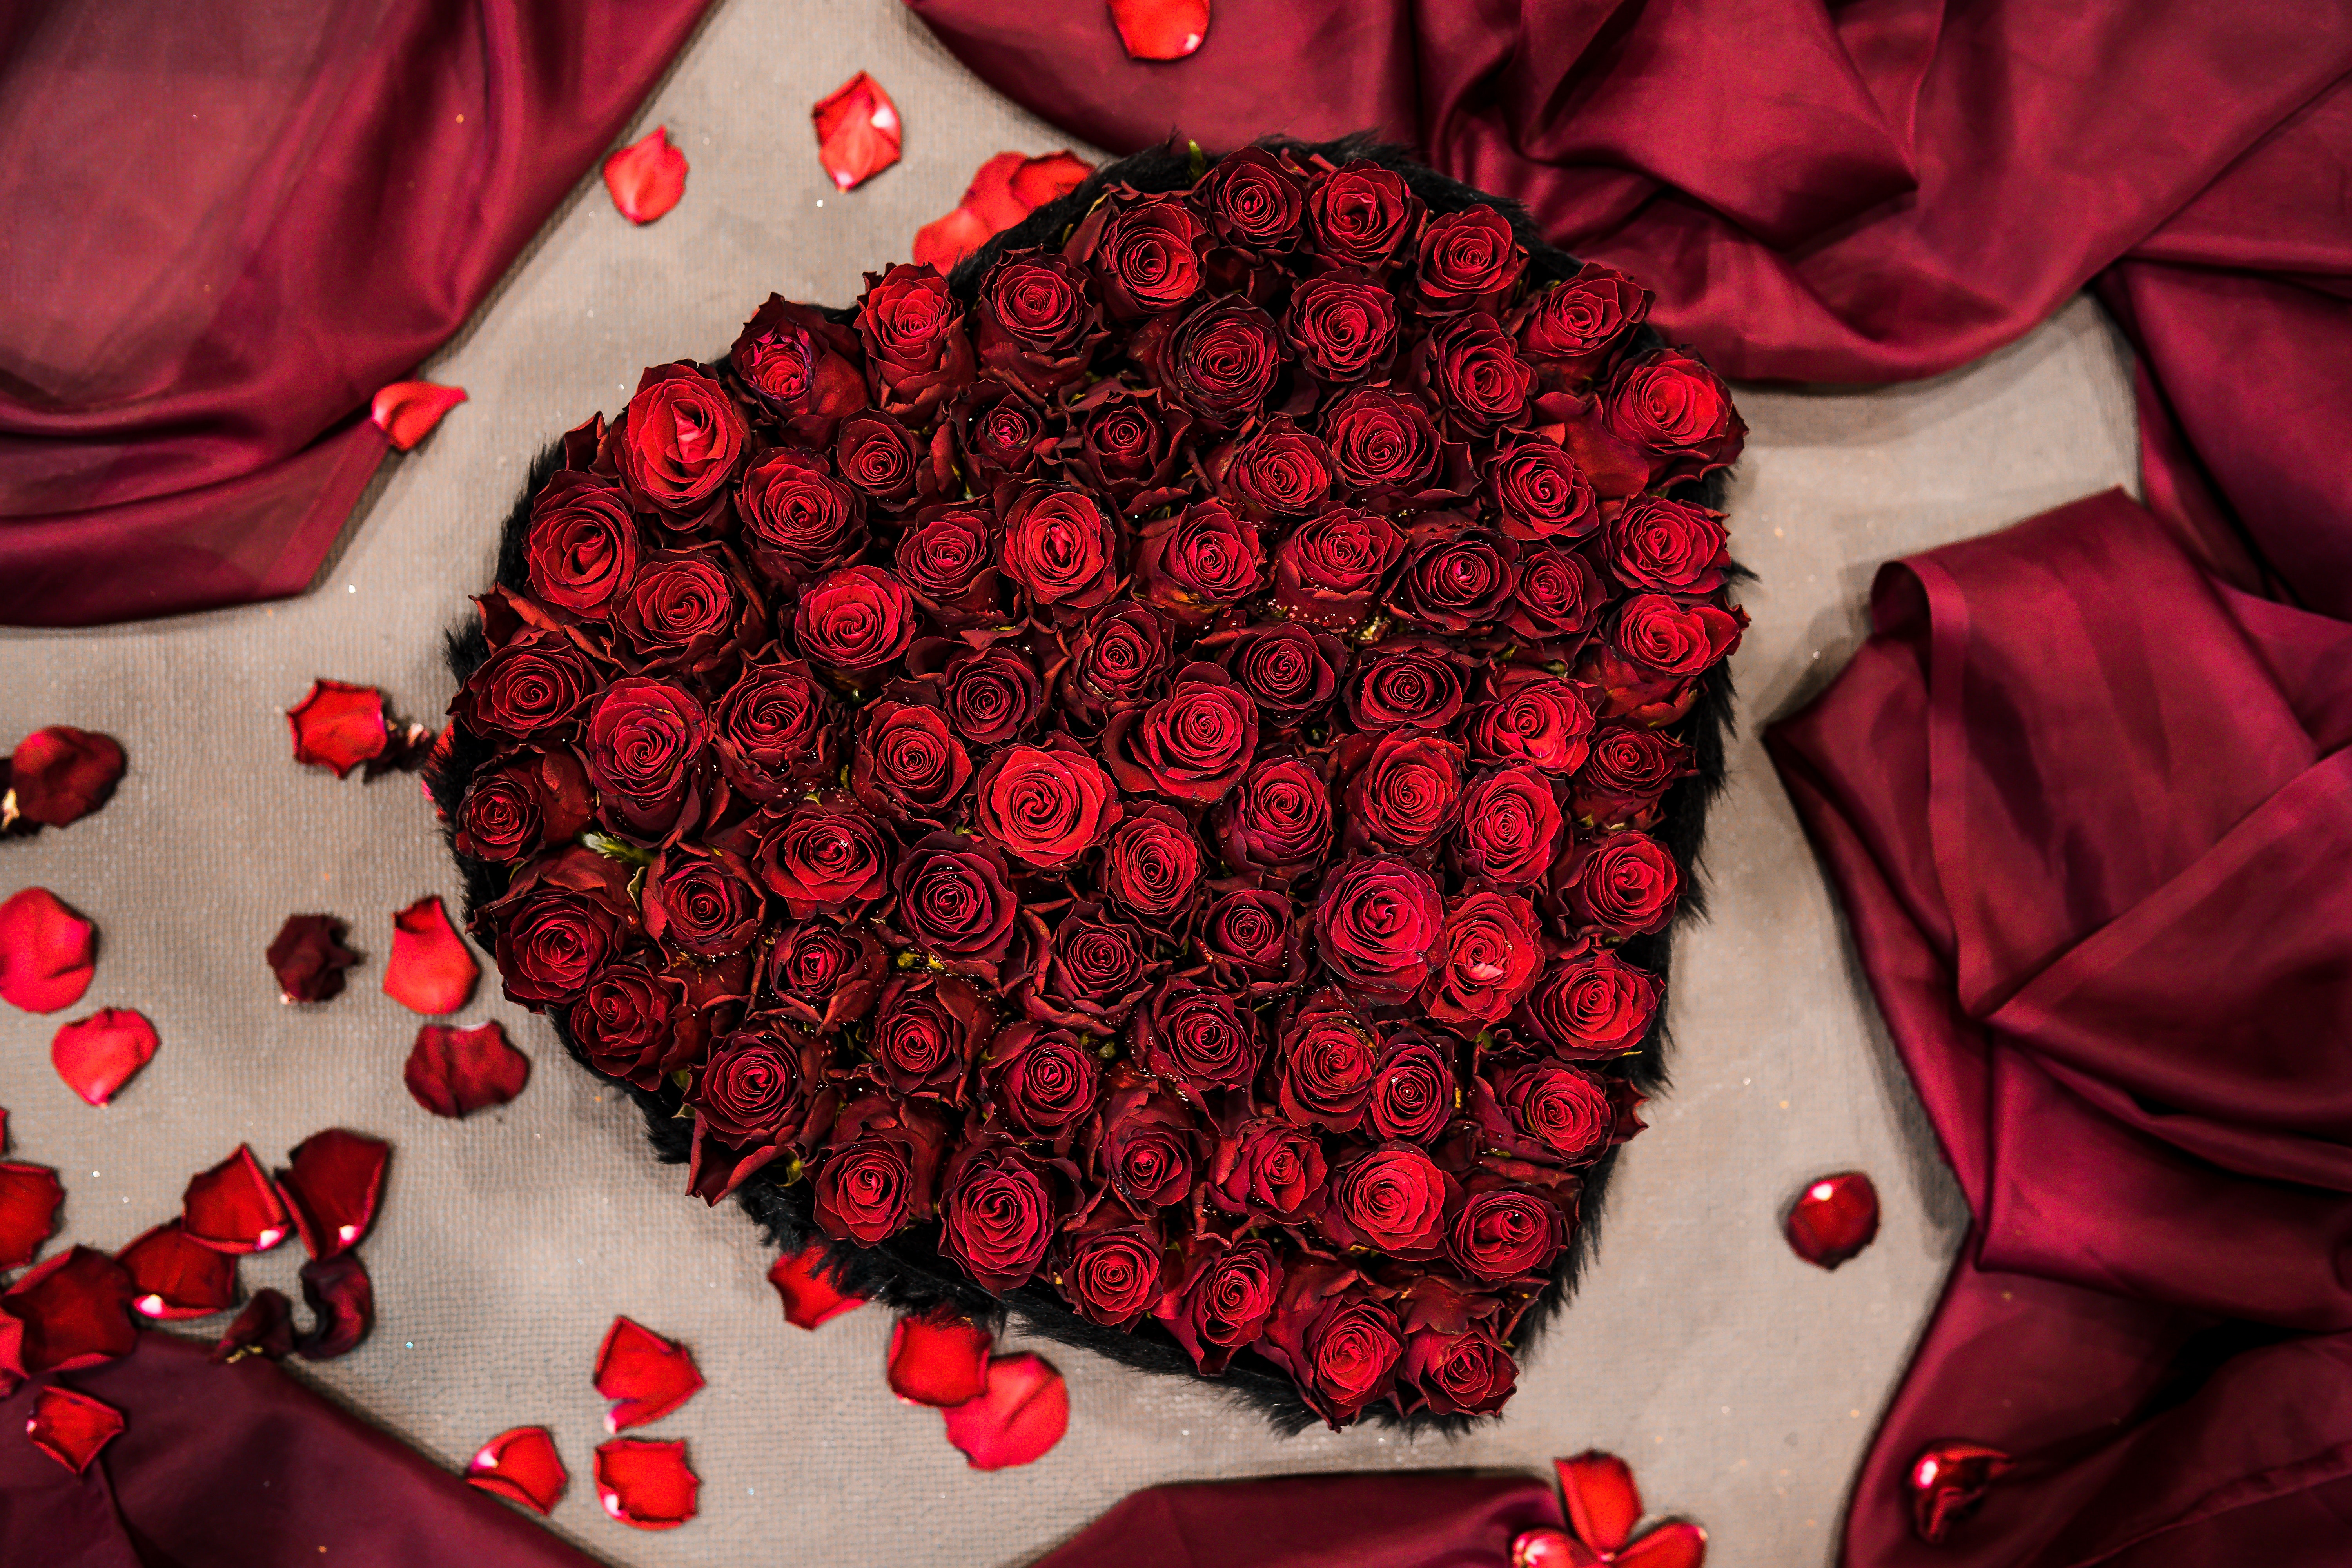 Gullar rasmi atirgul. Романтический букет. Шикарные красные розы. Красивый букет роз. Шикарный букет роз.